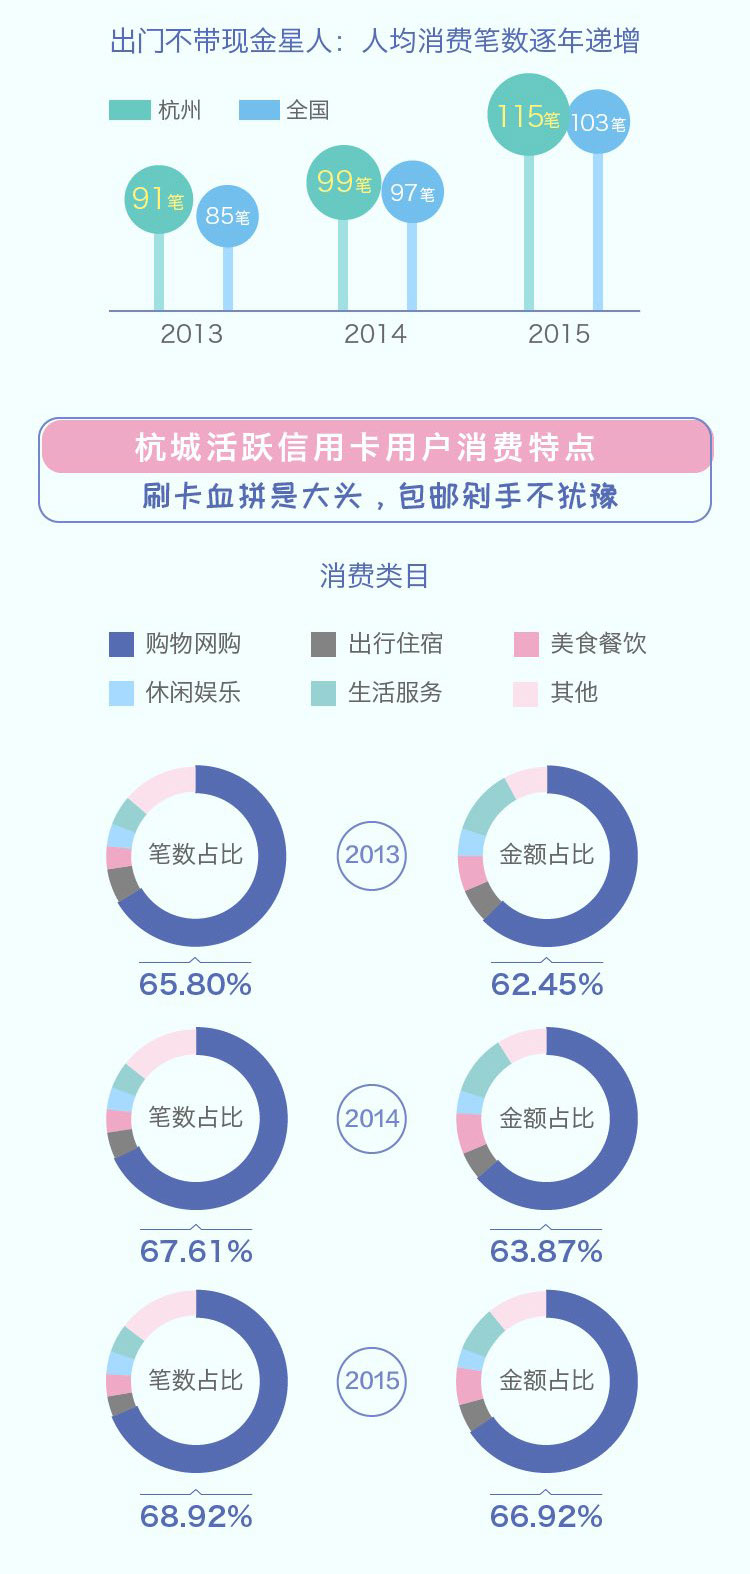 2013-2015年杭州活跃信誉卡用户消费报告